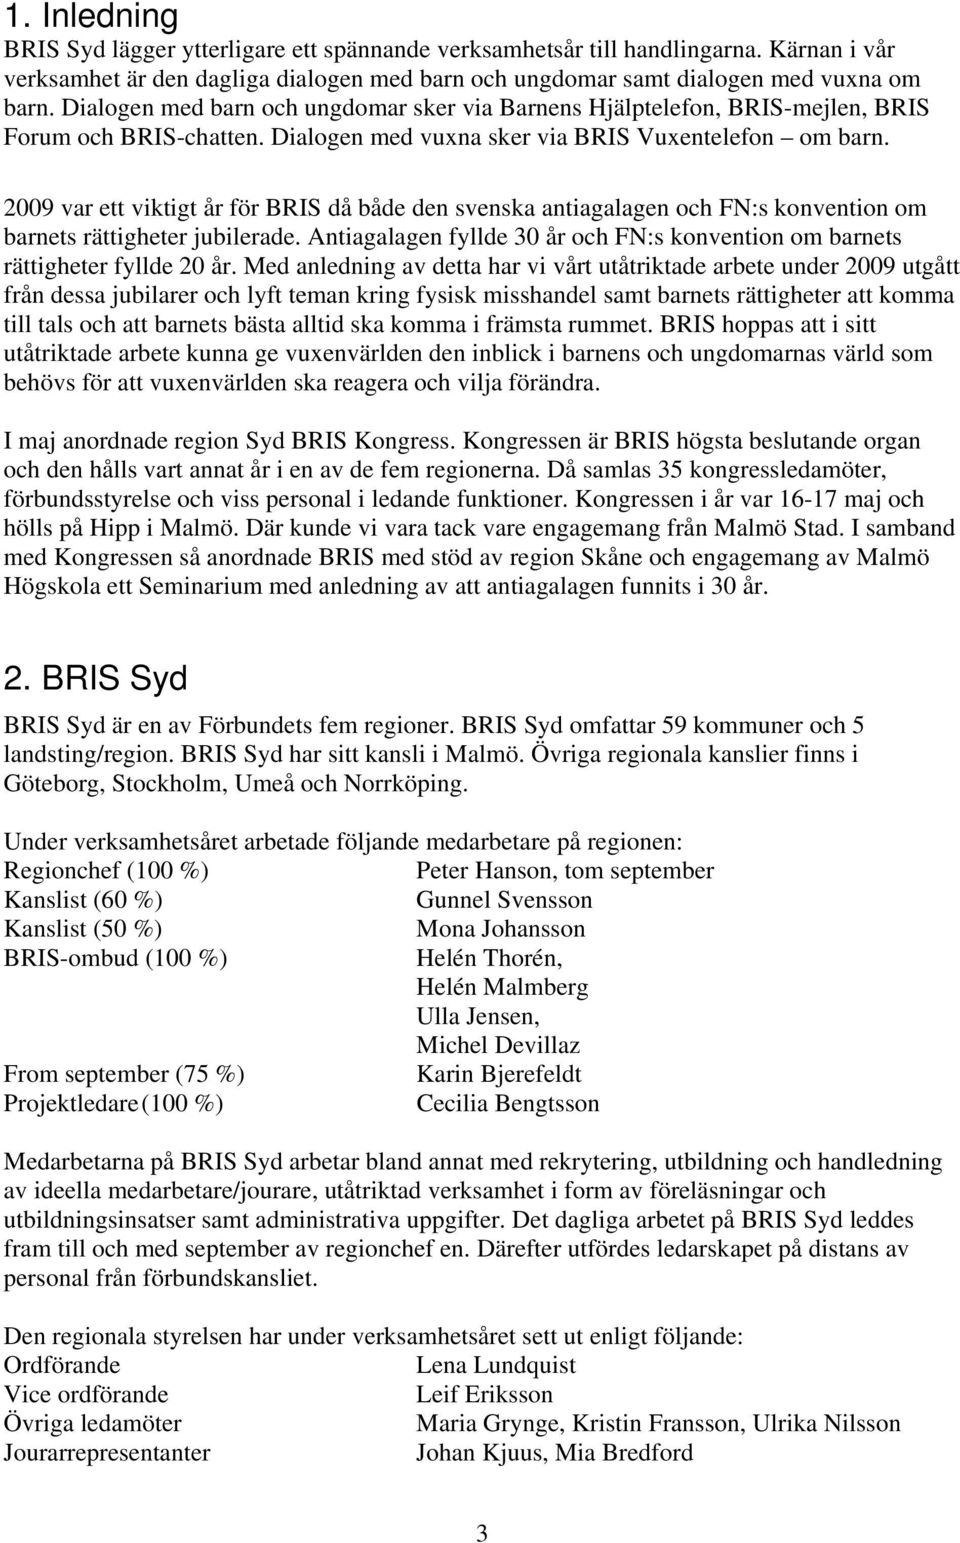 2009 var ett viktigt år för BRIS då både den svenska antiagalagen och FN:s konvention om barnets rättigheter jubilerade.